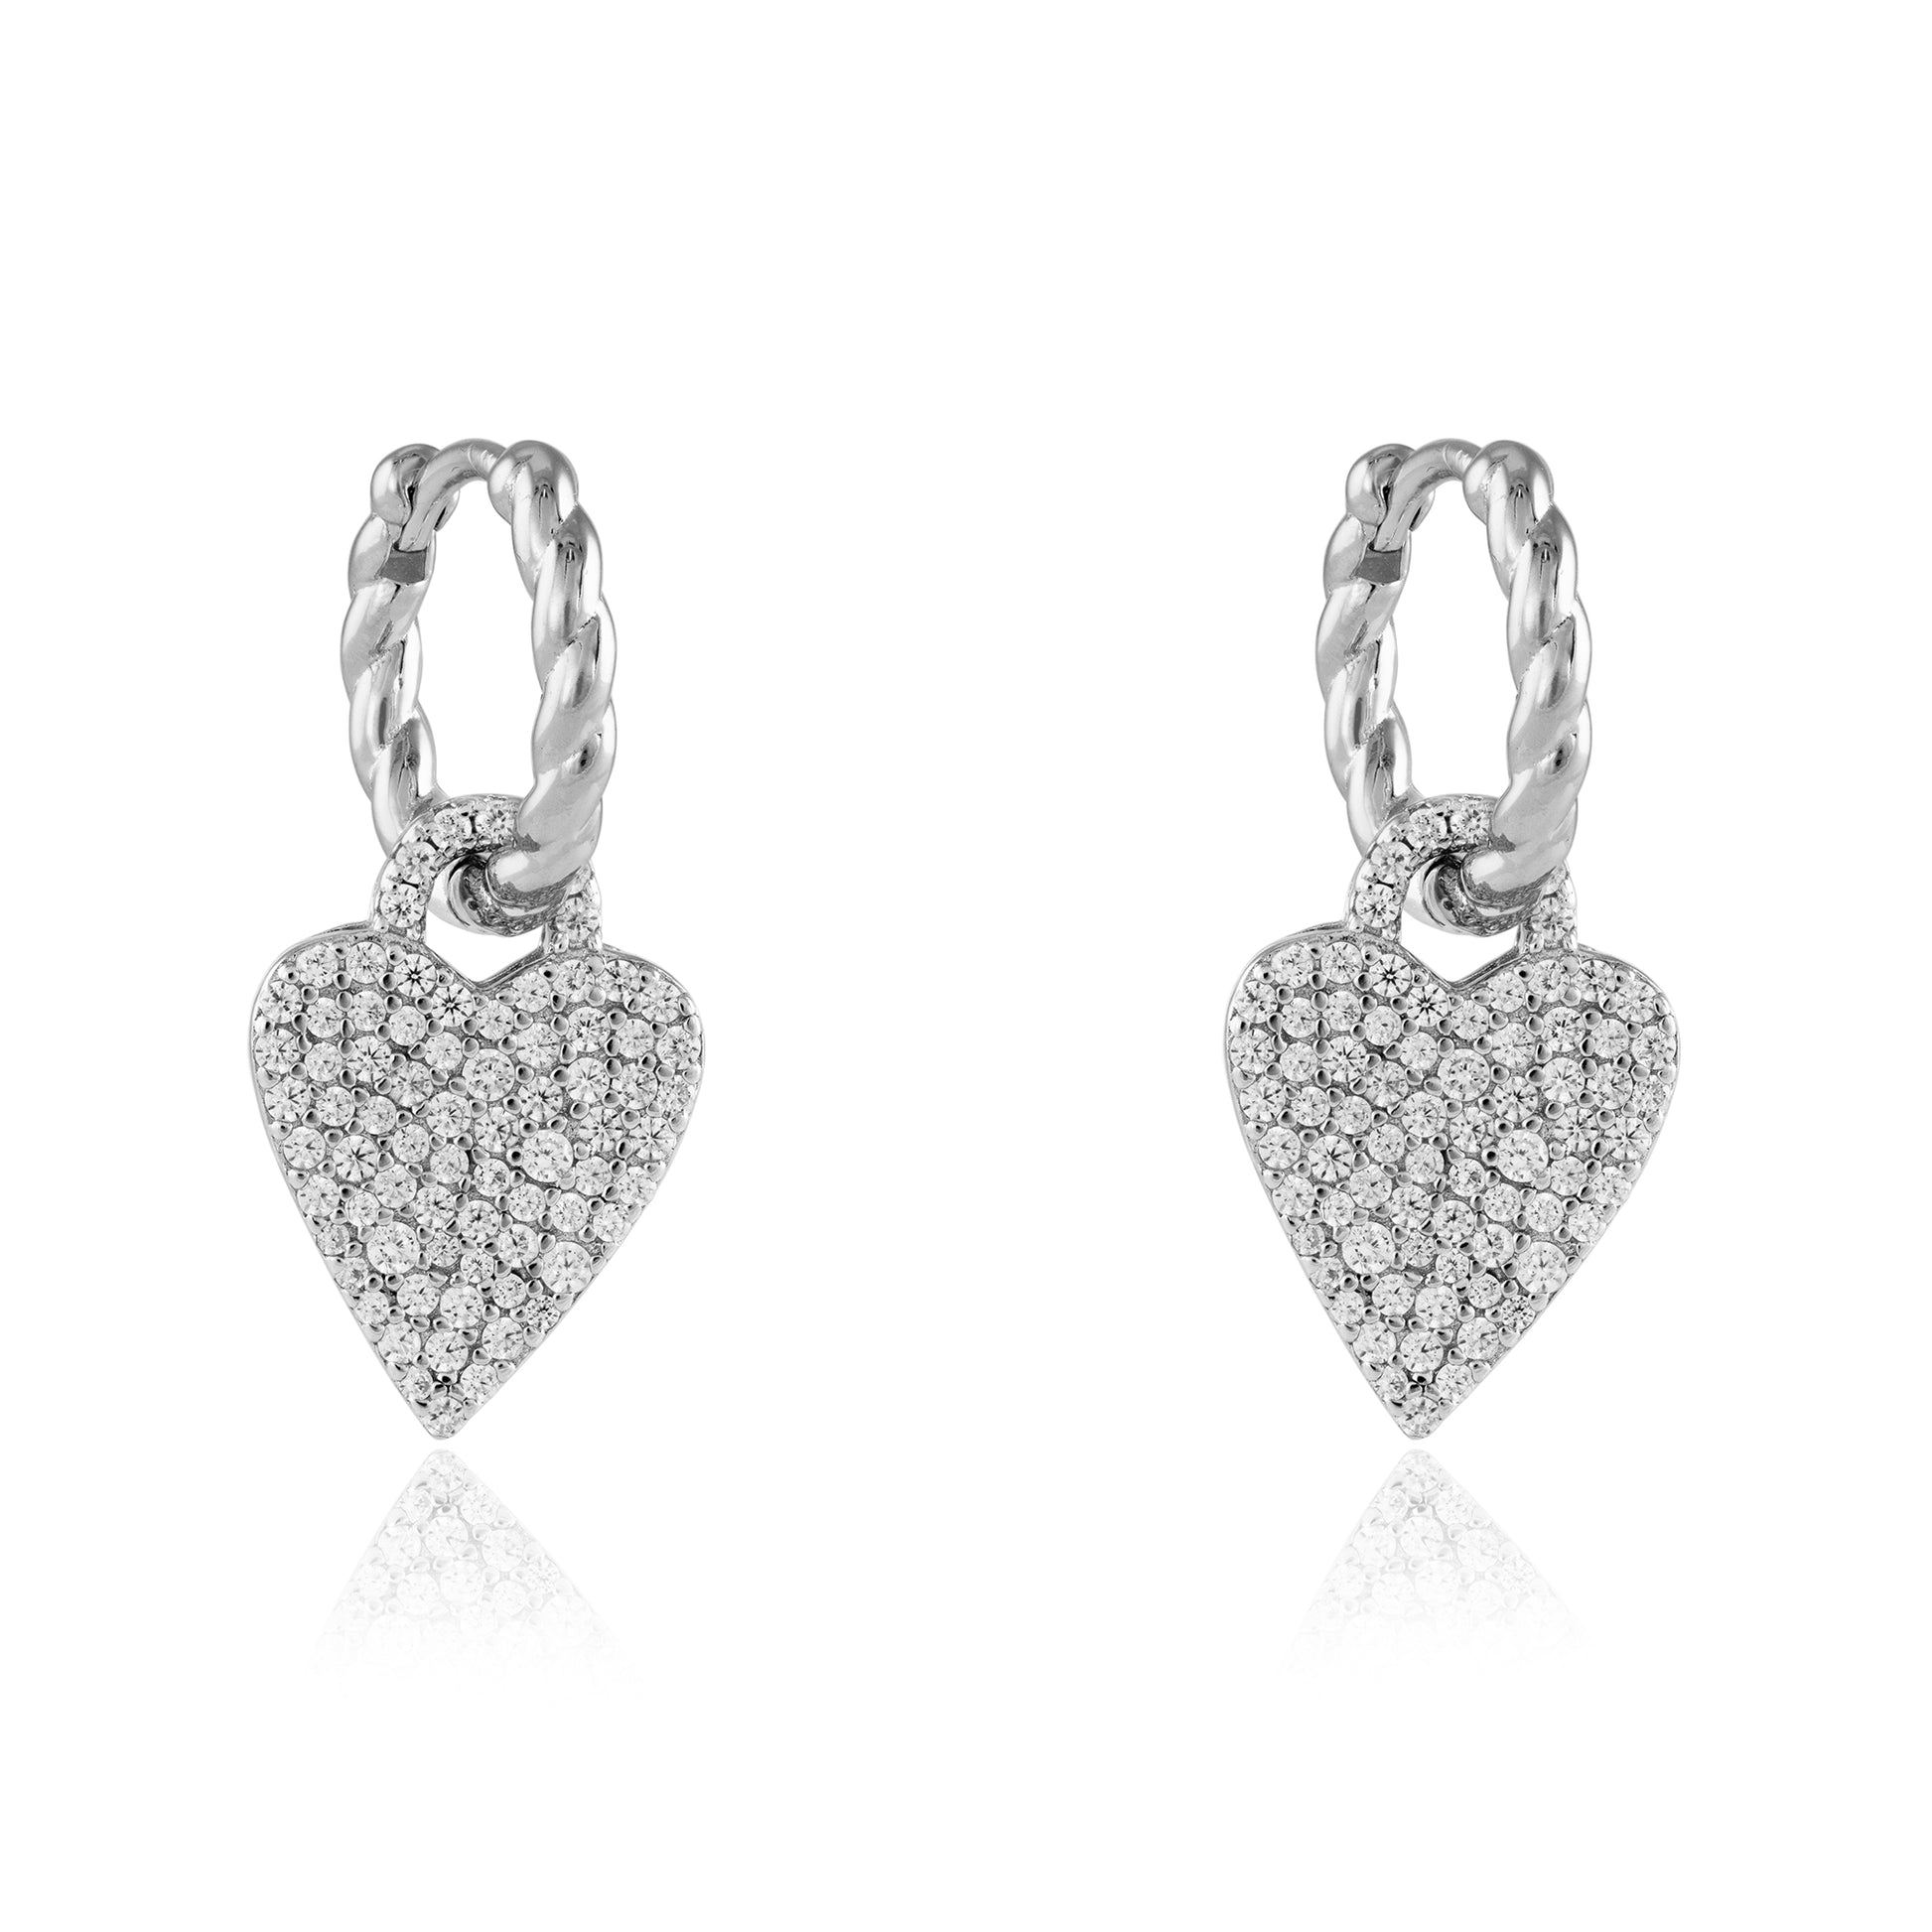 Sterling Silver  CZ Love Heart Huggie Drop Earrings 25mm - JACOBJE012